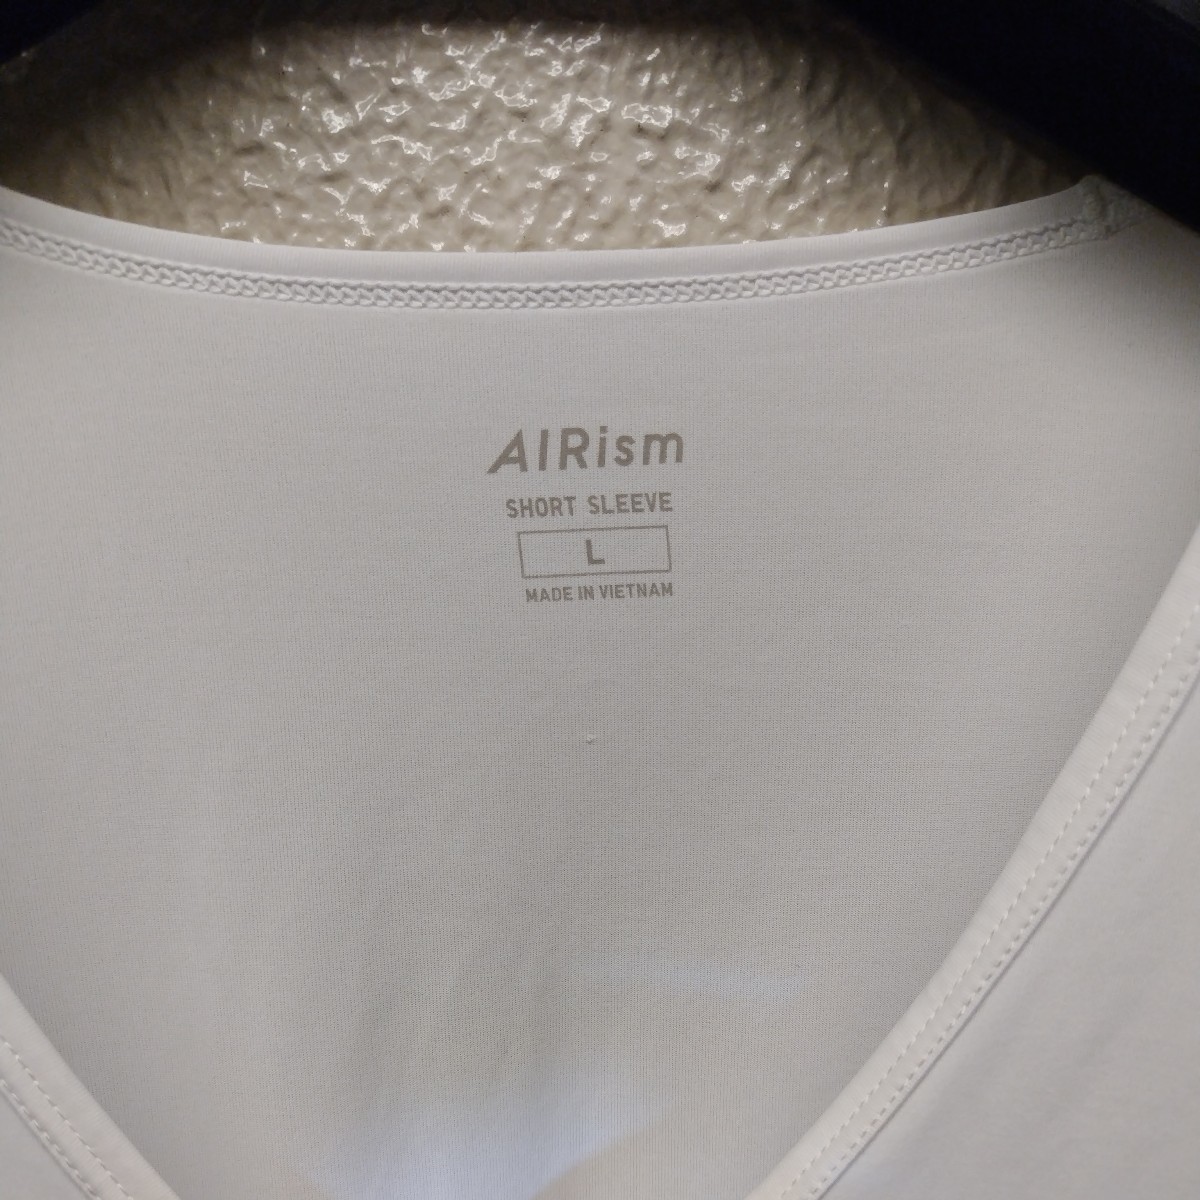  Uniqlo airism мужской L размер рубашка с коротким рукавом 2 шт. комплект 11|4